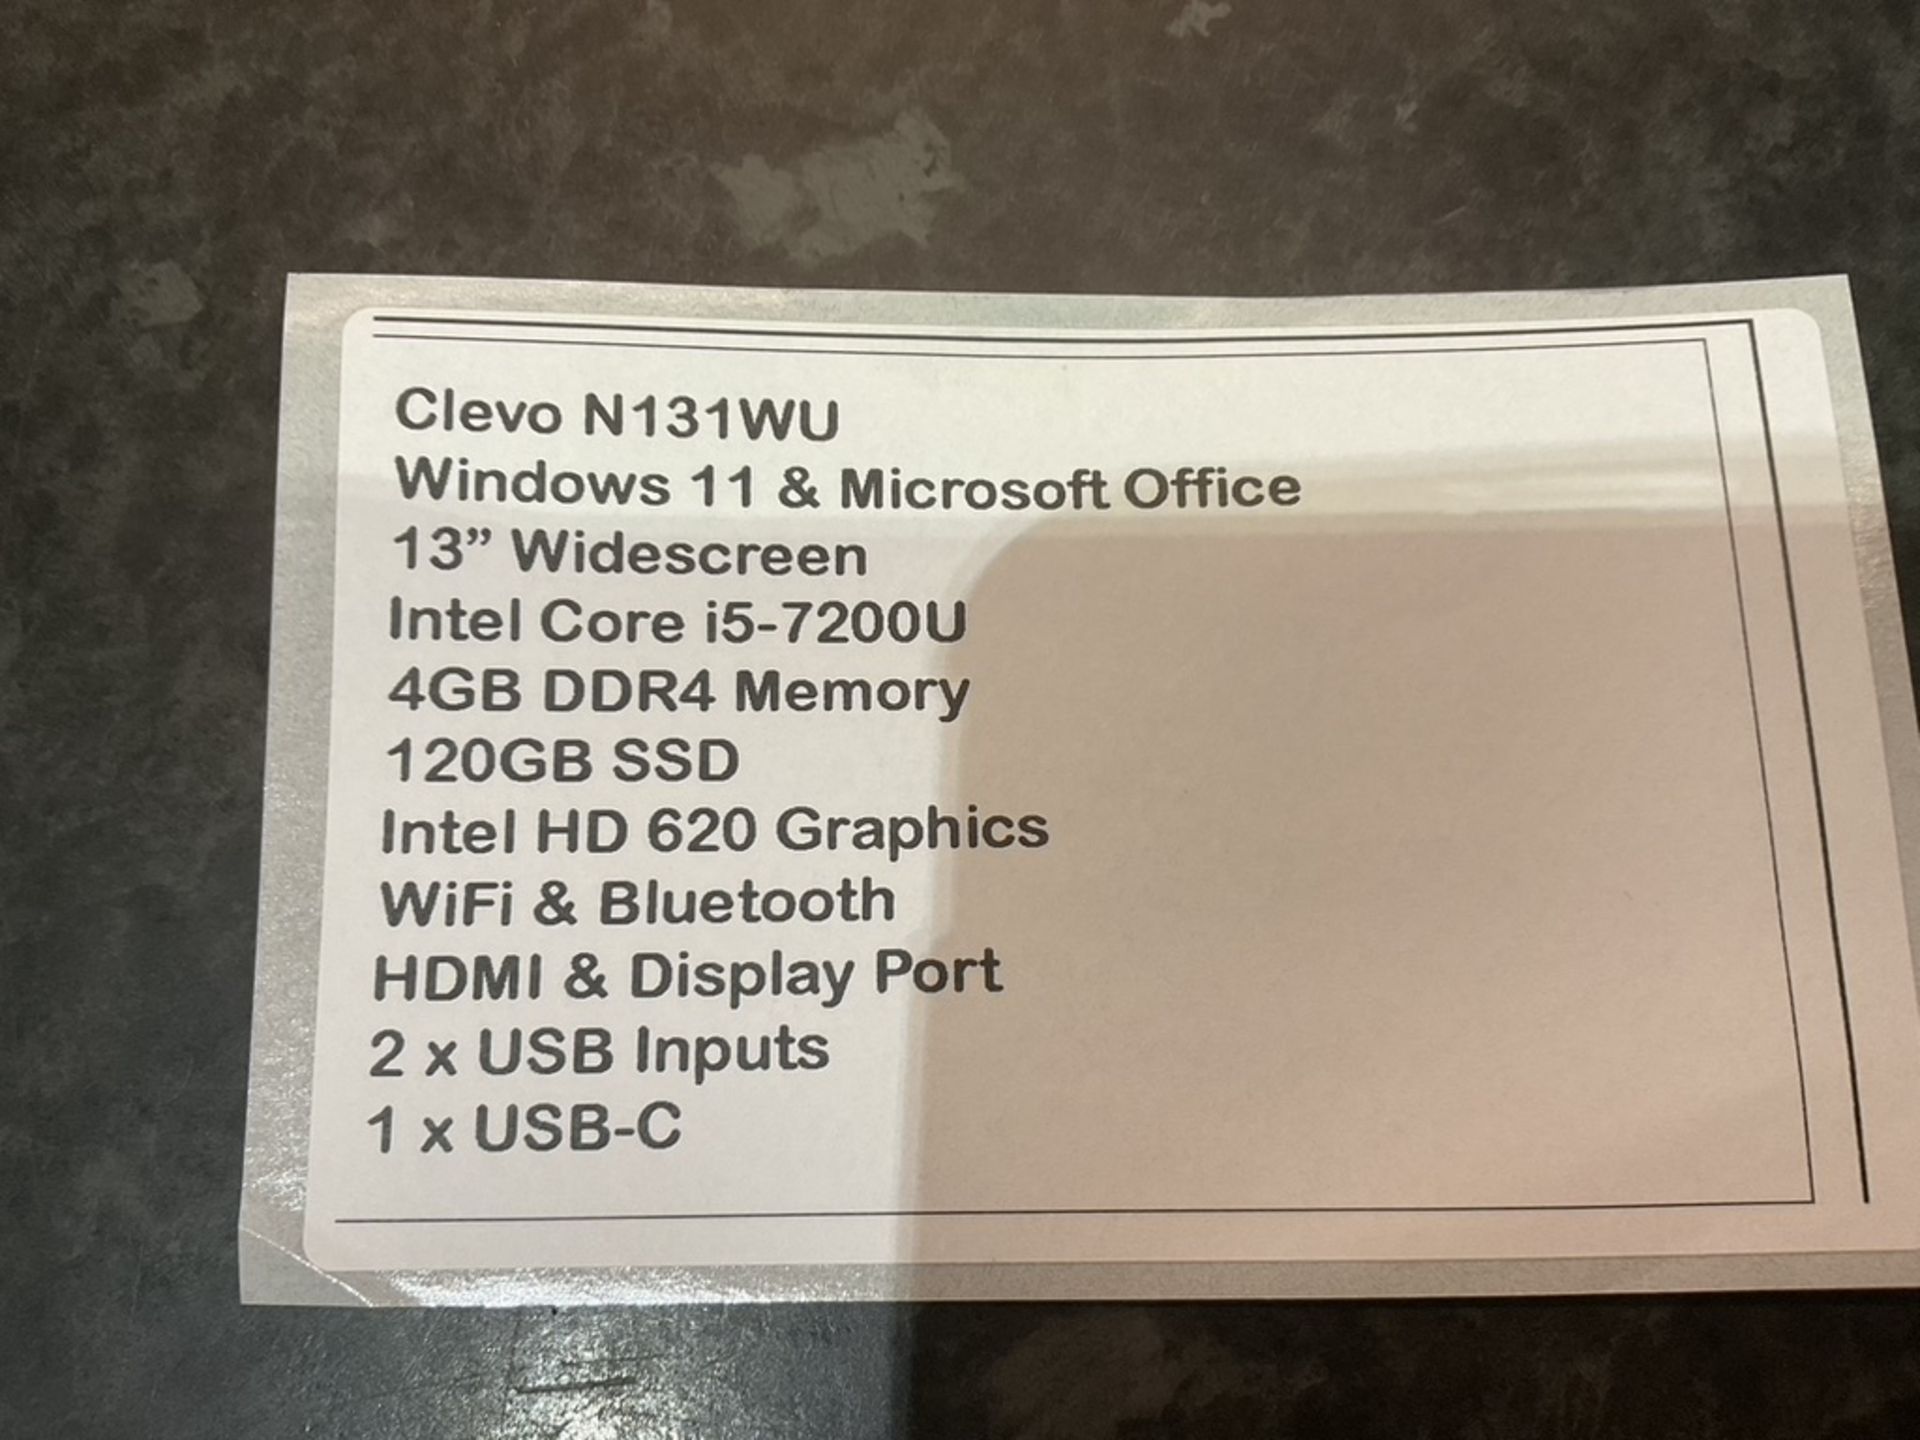 CLEVO N131WU Windows 11 Laptop 13"" Intel Core i5-7200U 4GB DDR4 120GB SSD WiFi Webcam HDMI Office - Image 8 of 8